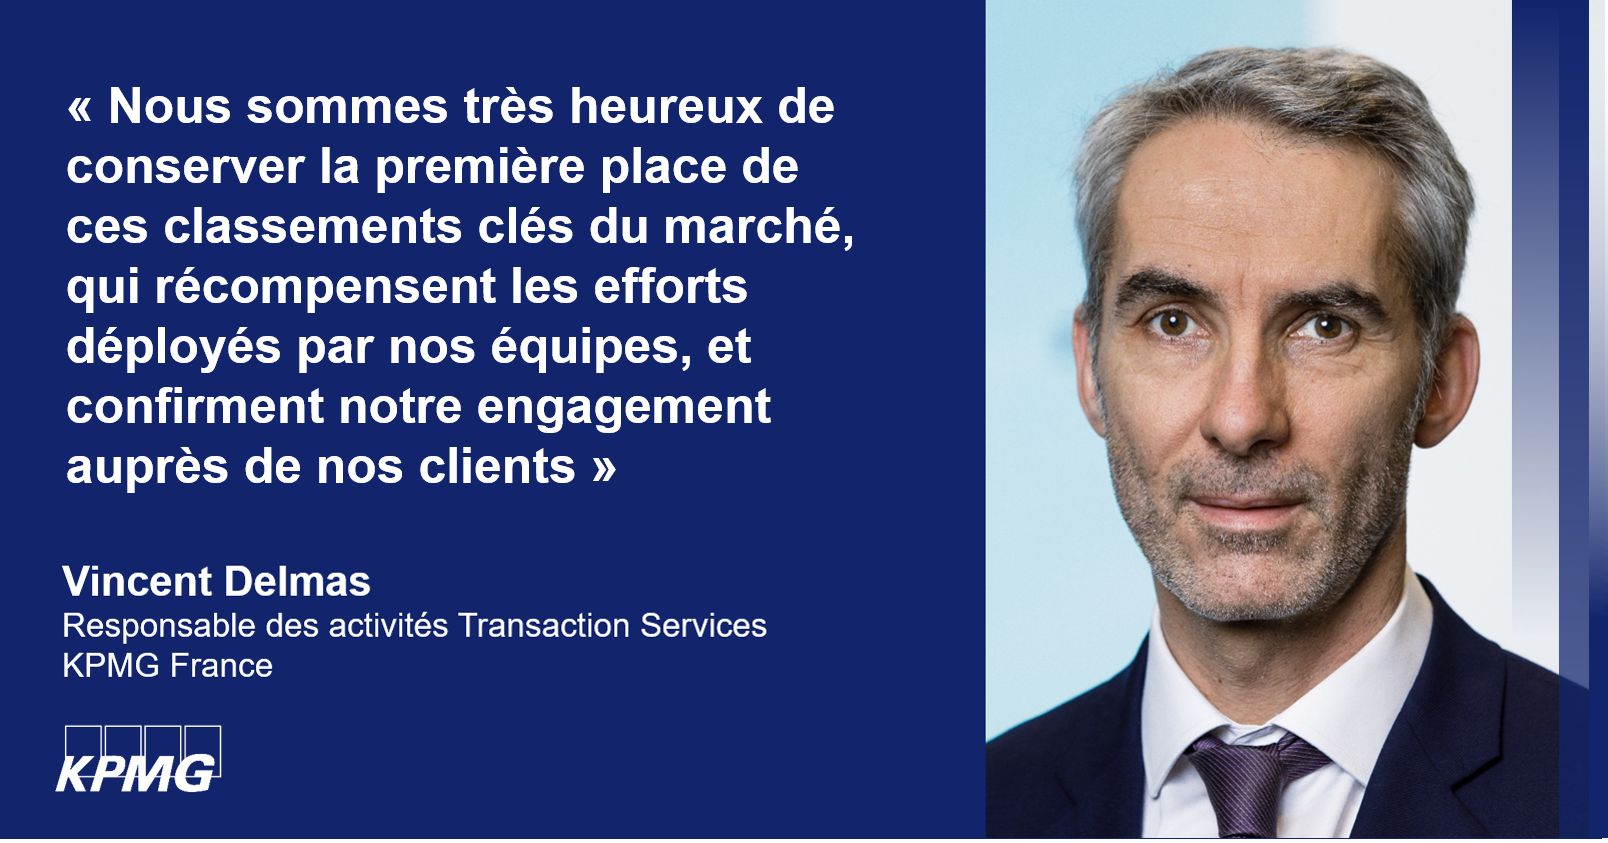 Vincent Delmas Associé, Deal Advisory, Transaction Services KPMG France